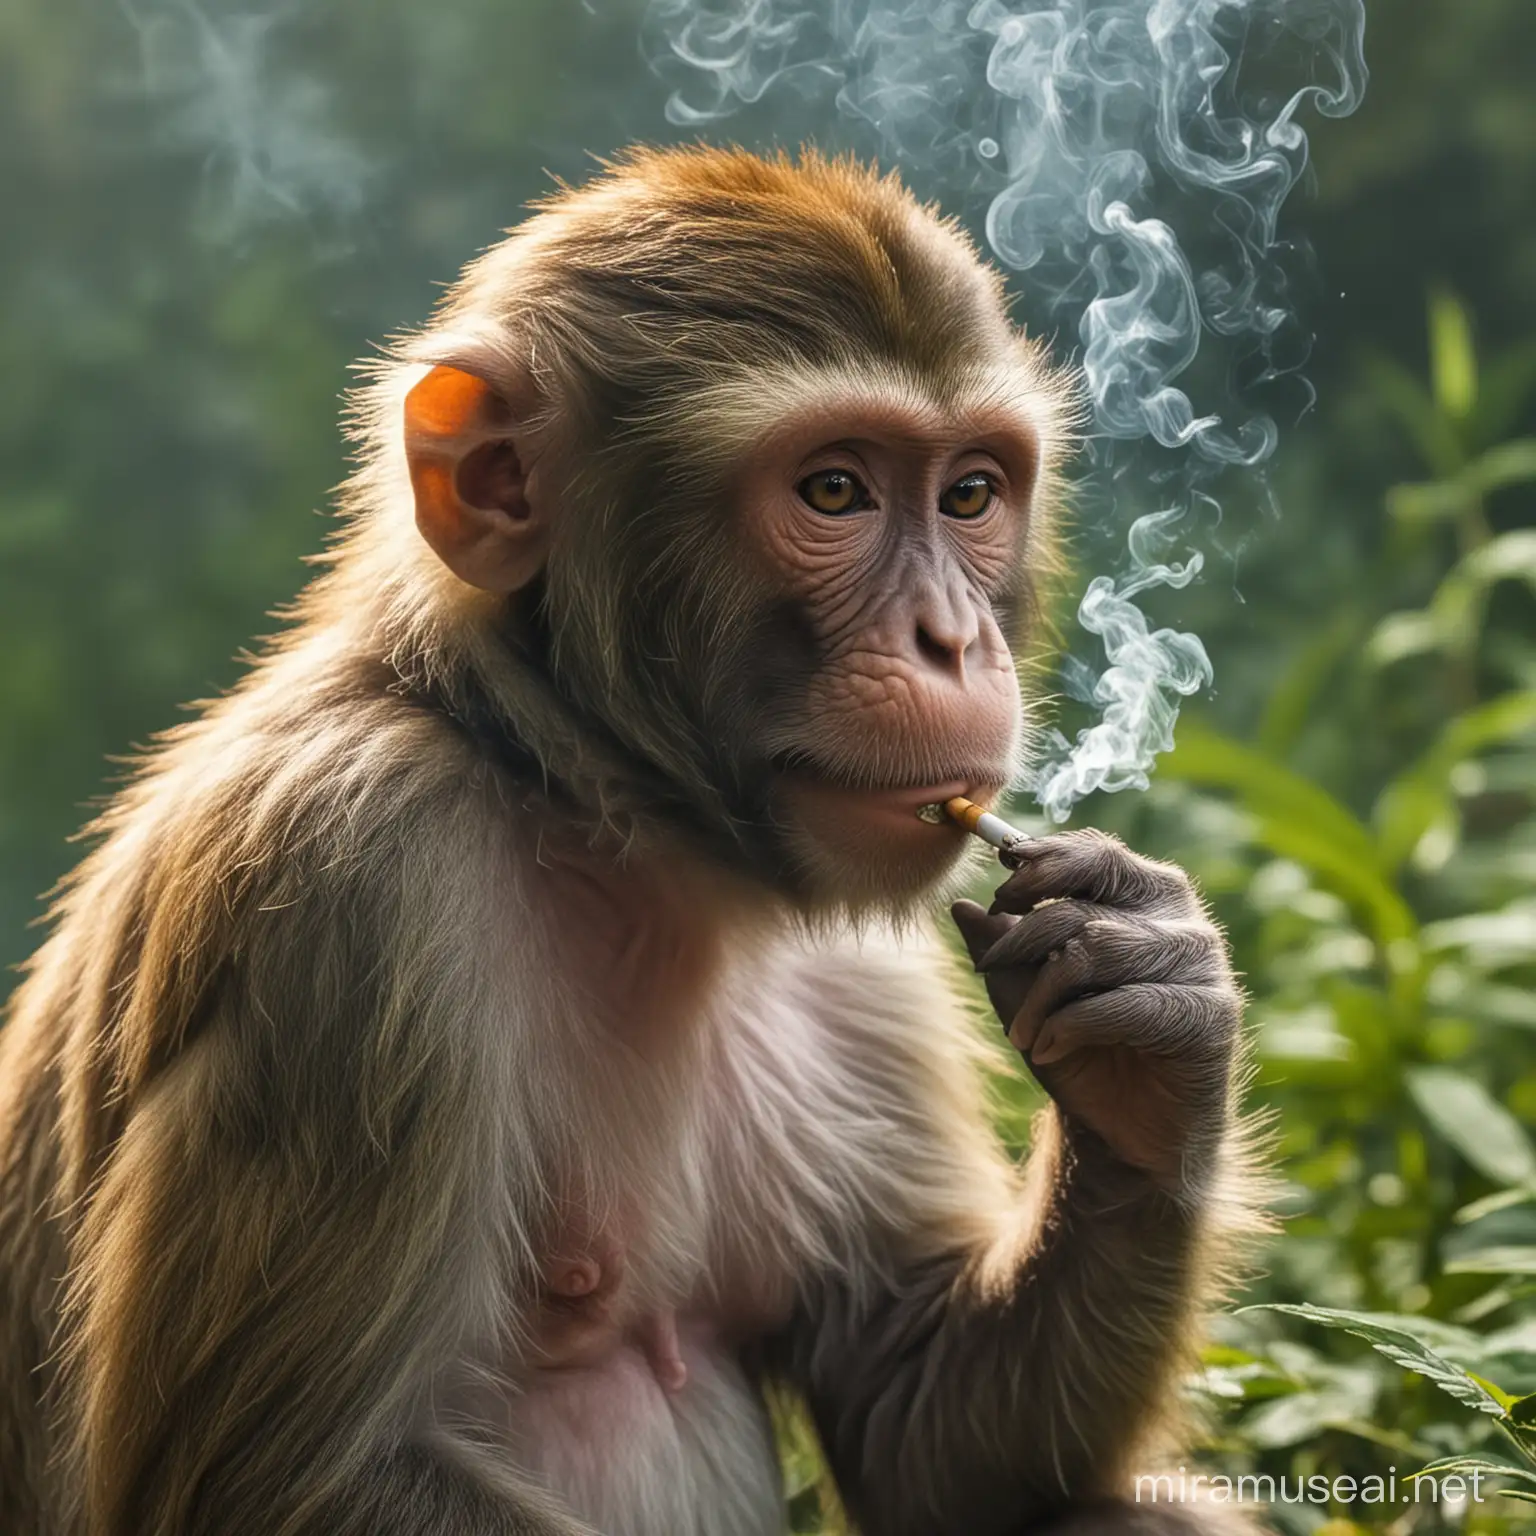 Playful Monkey Enjoying a Relaxing Smoke Break in a Tropical Jungle